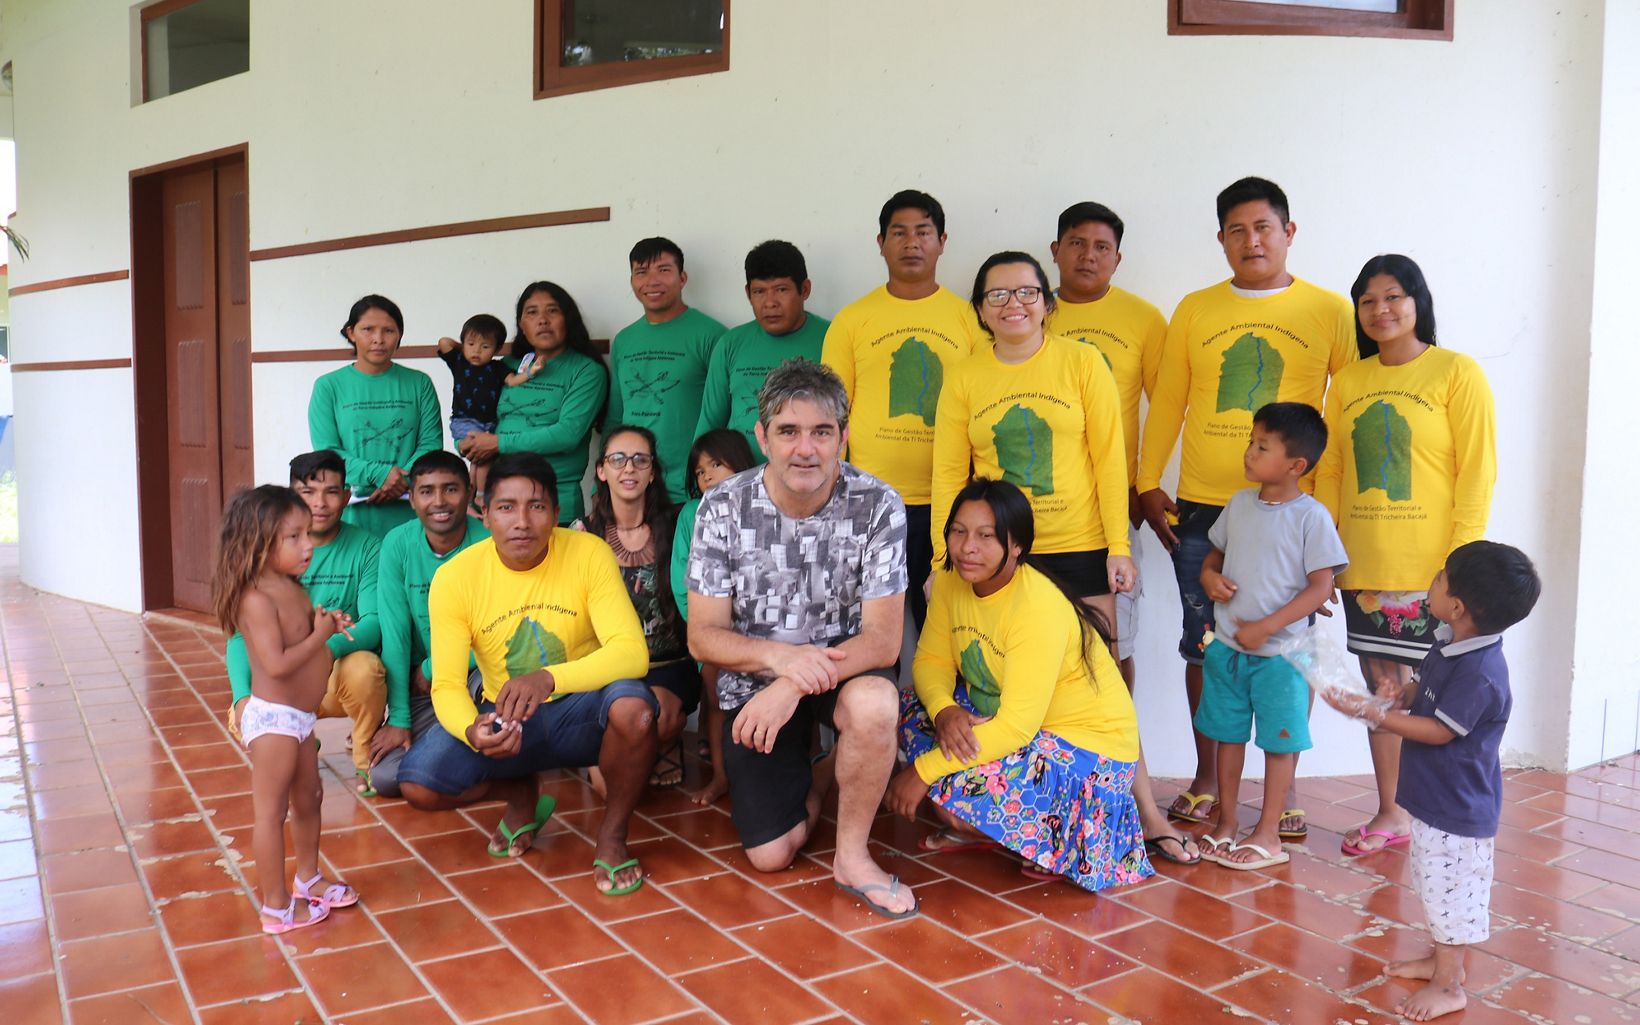 Eduardo Barnes e Luciana Lima, da TNC Brasil, junto com os os representantes dos povos indígenas Parakanã e Xikrin na SEMEX 2019, em Altamira-PA.